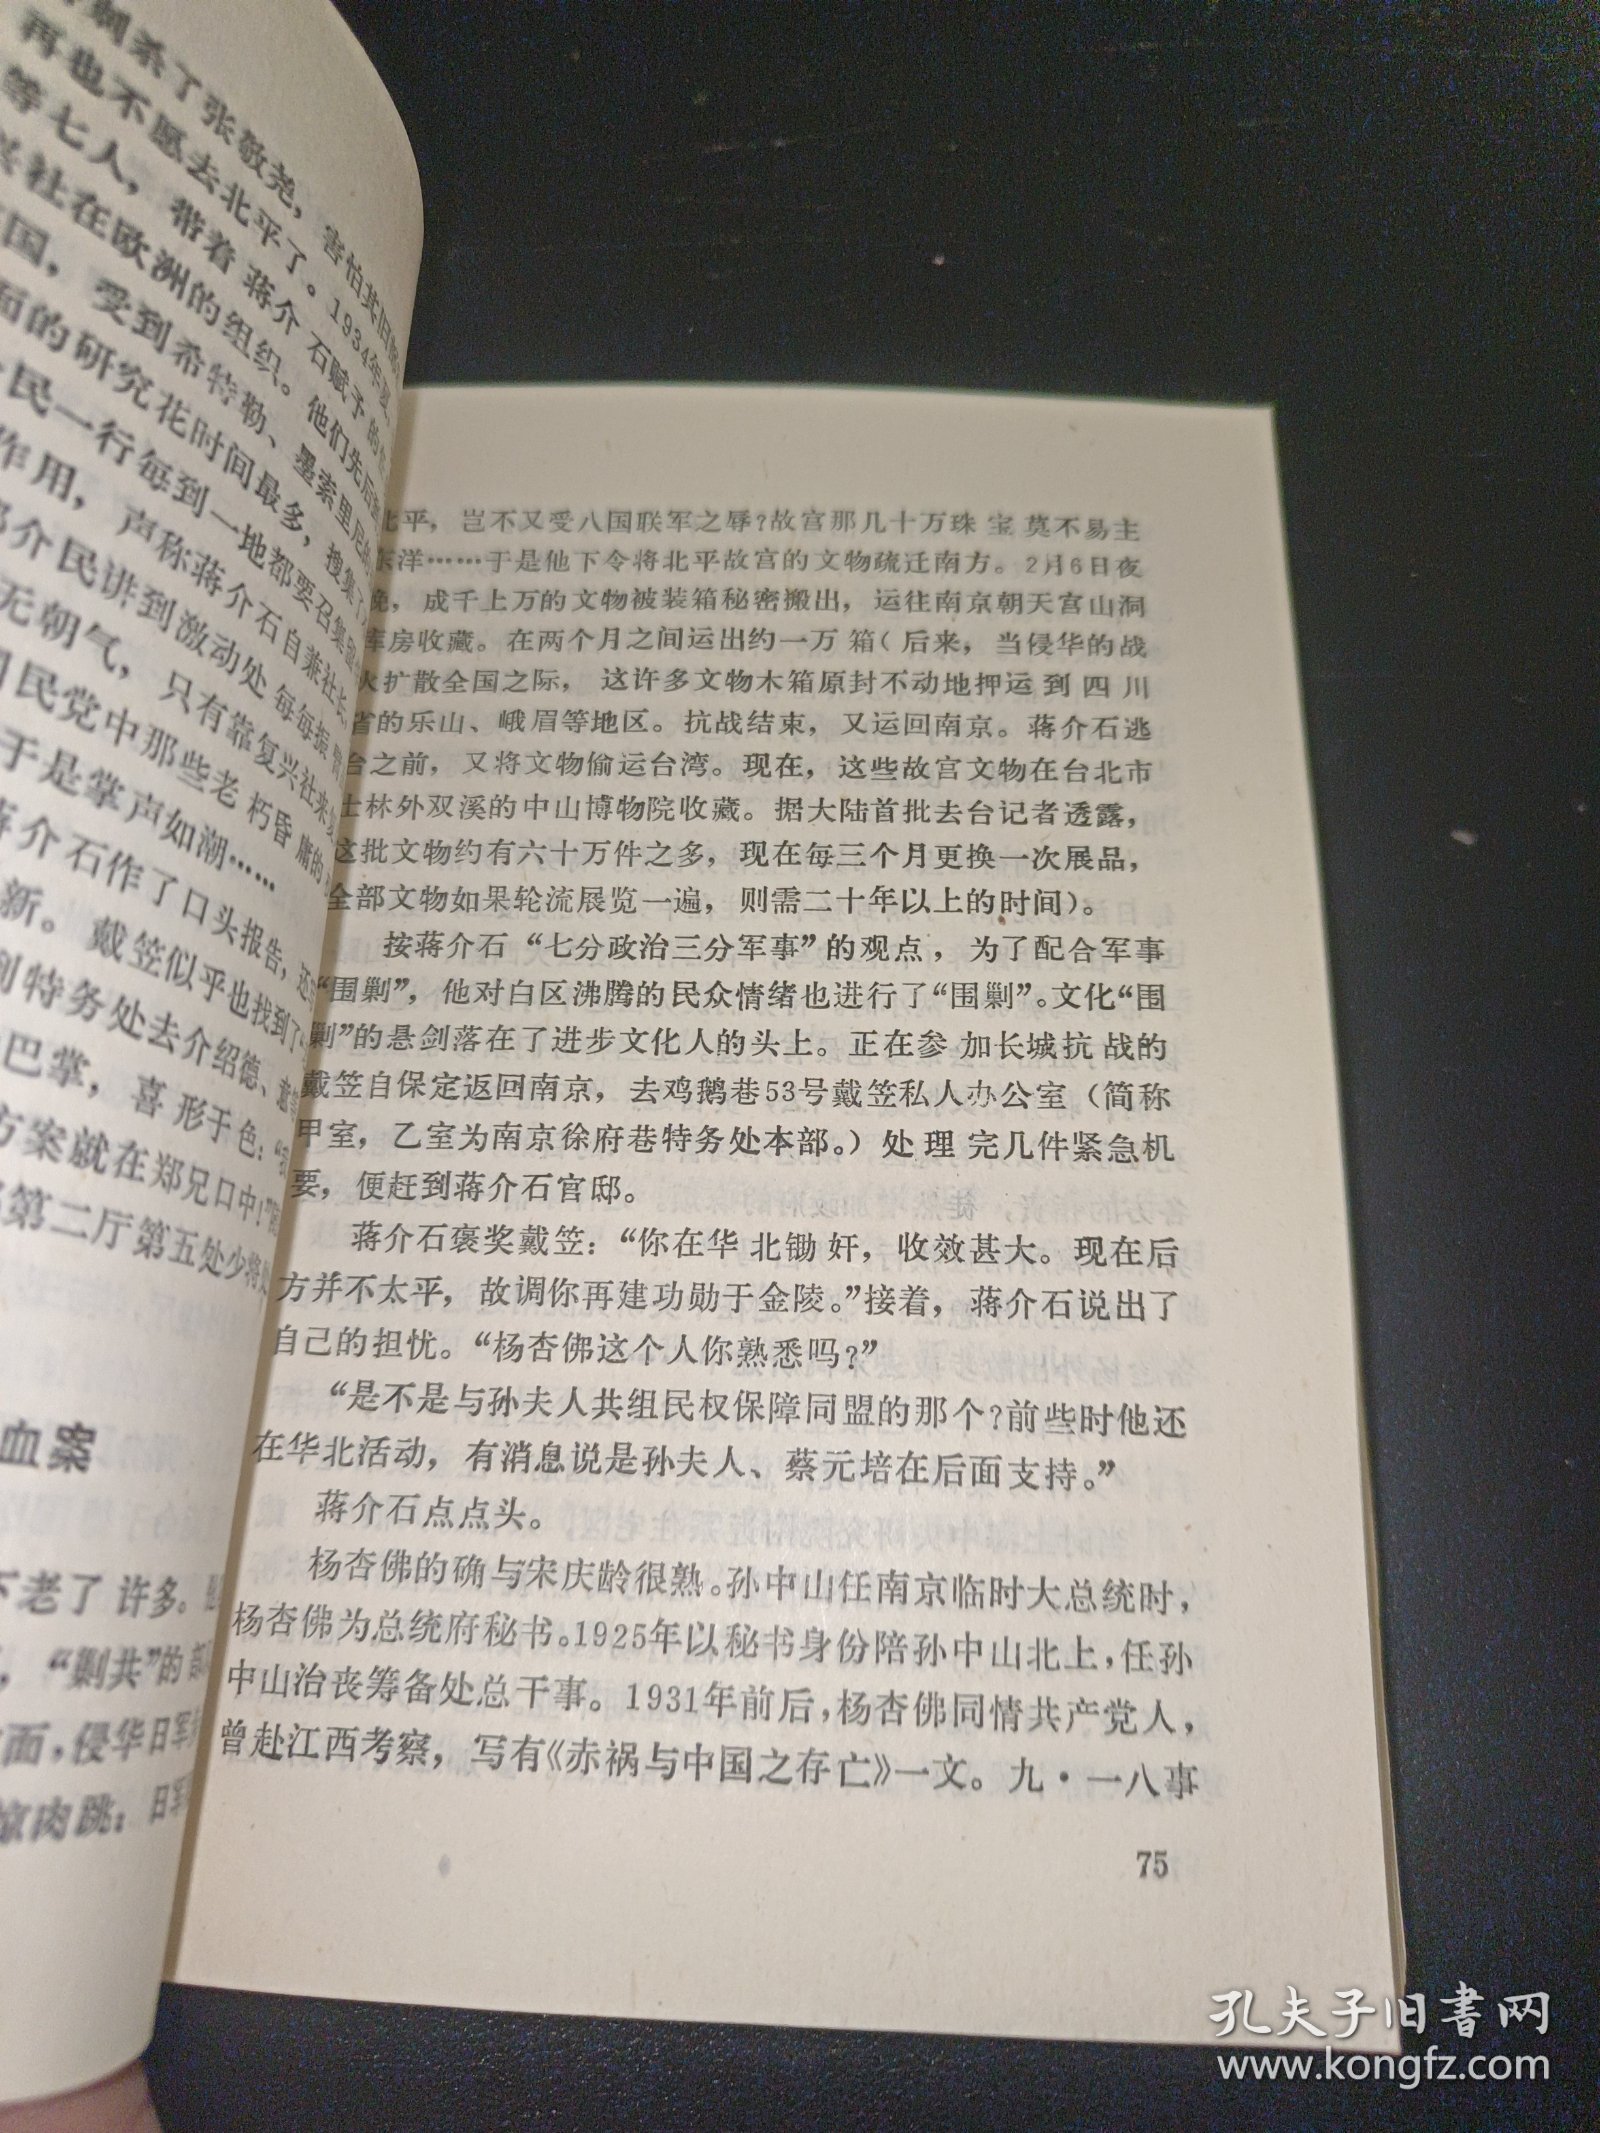 蒋介石与十三太保 黄埔纪实系列之三